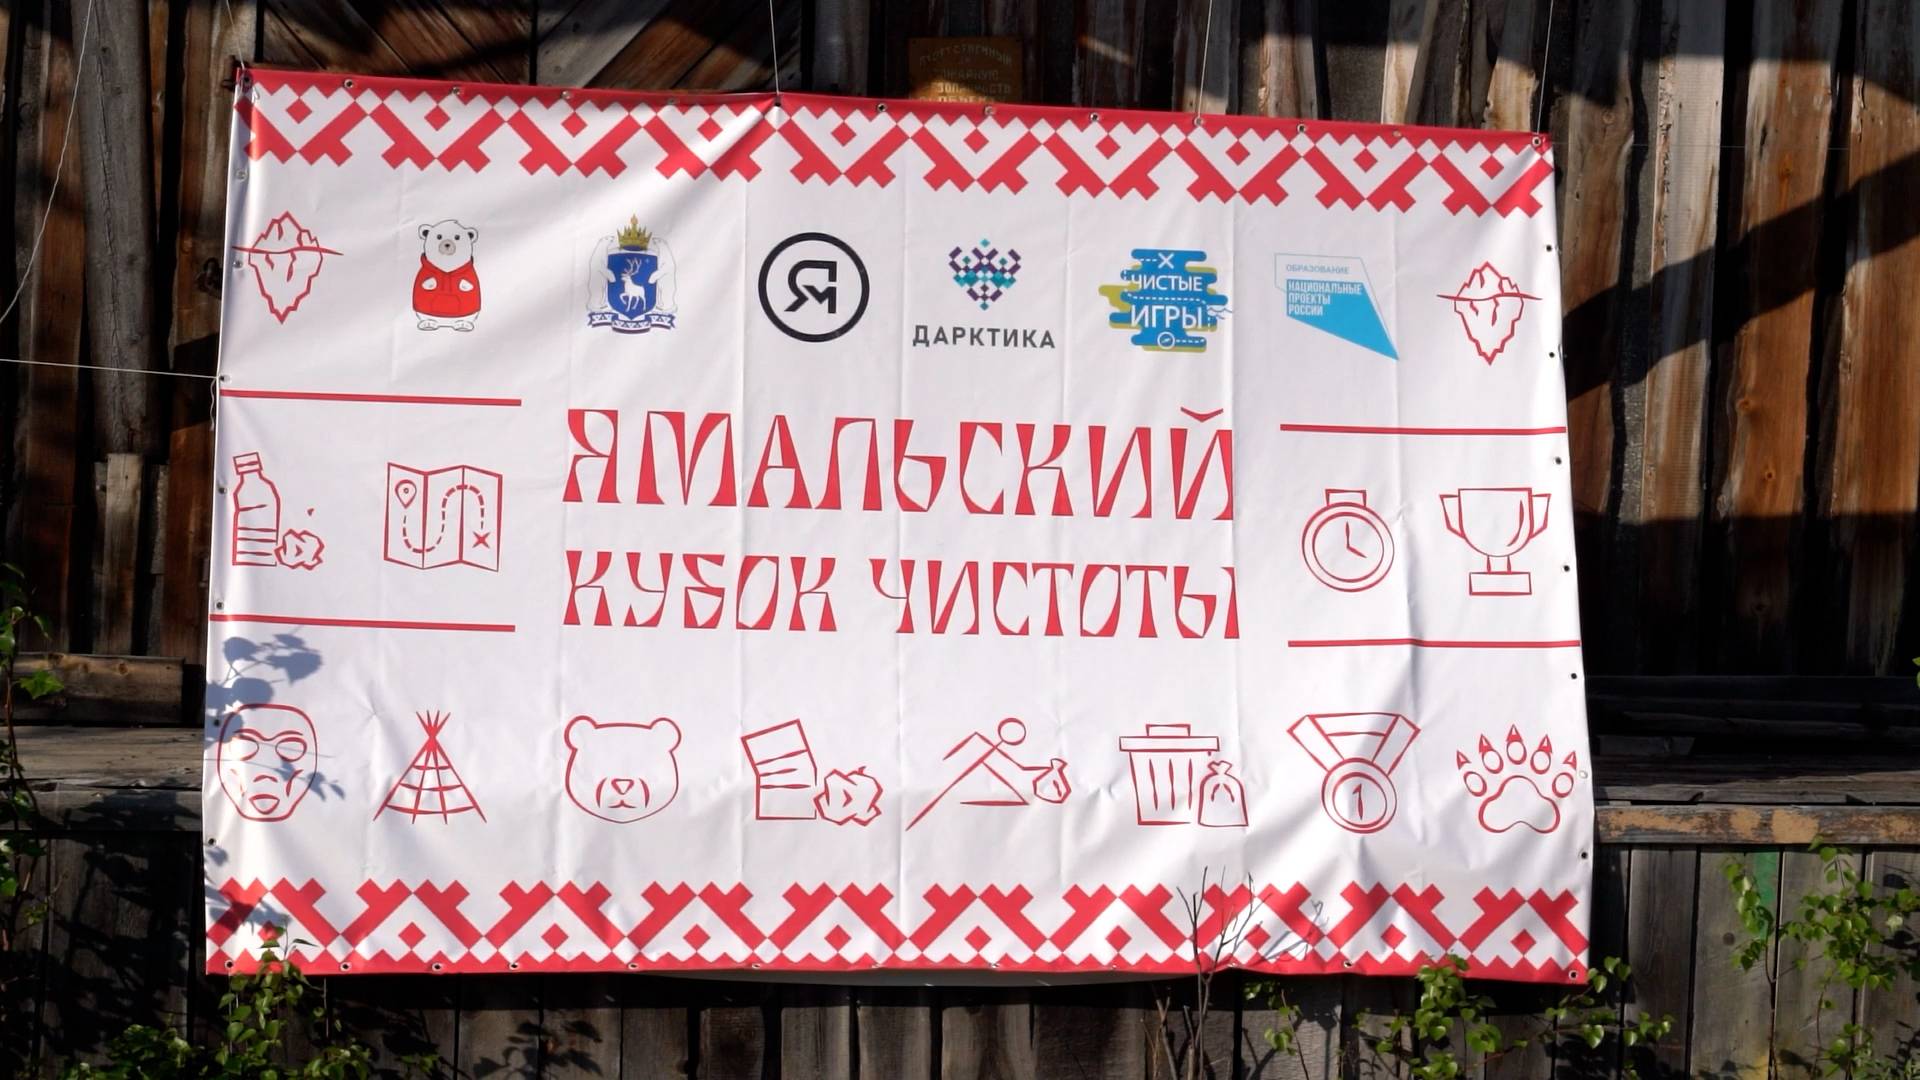 Красноселькупский район присоединился к масштабной акции «Ямальский кубок чистоты»